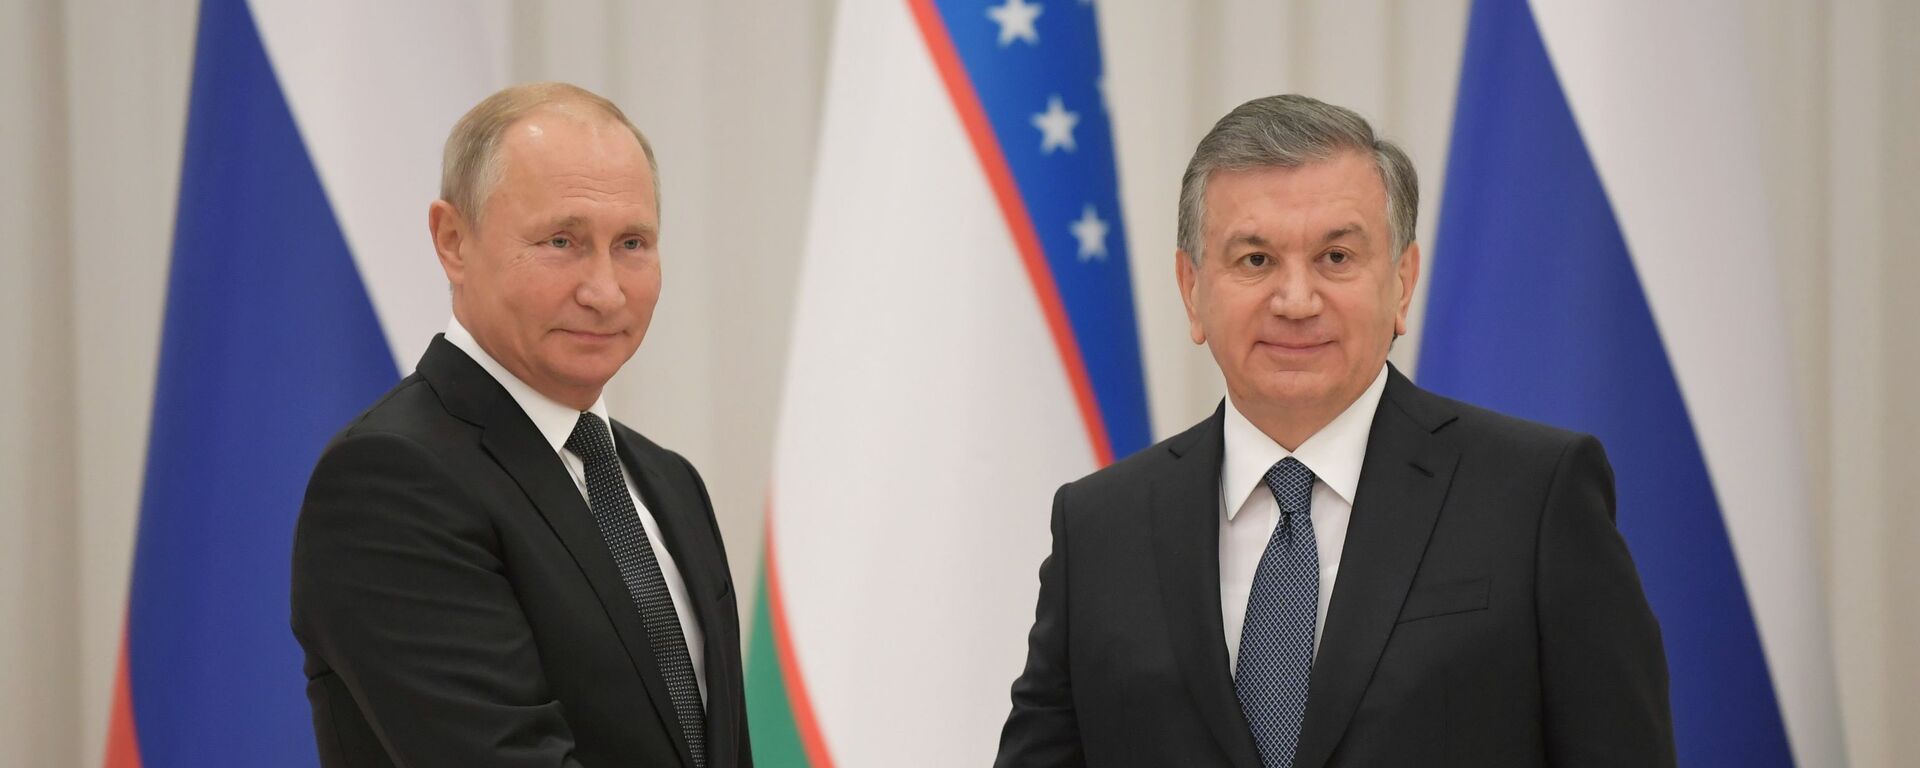 Встреча: Владимир Путин и Шавкат Мирзиёев - Sputnik Узбекистан, 1920, 09.04.2021